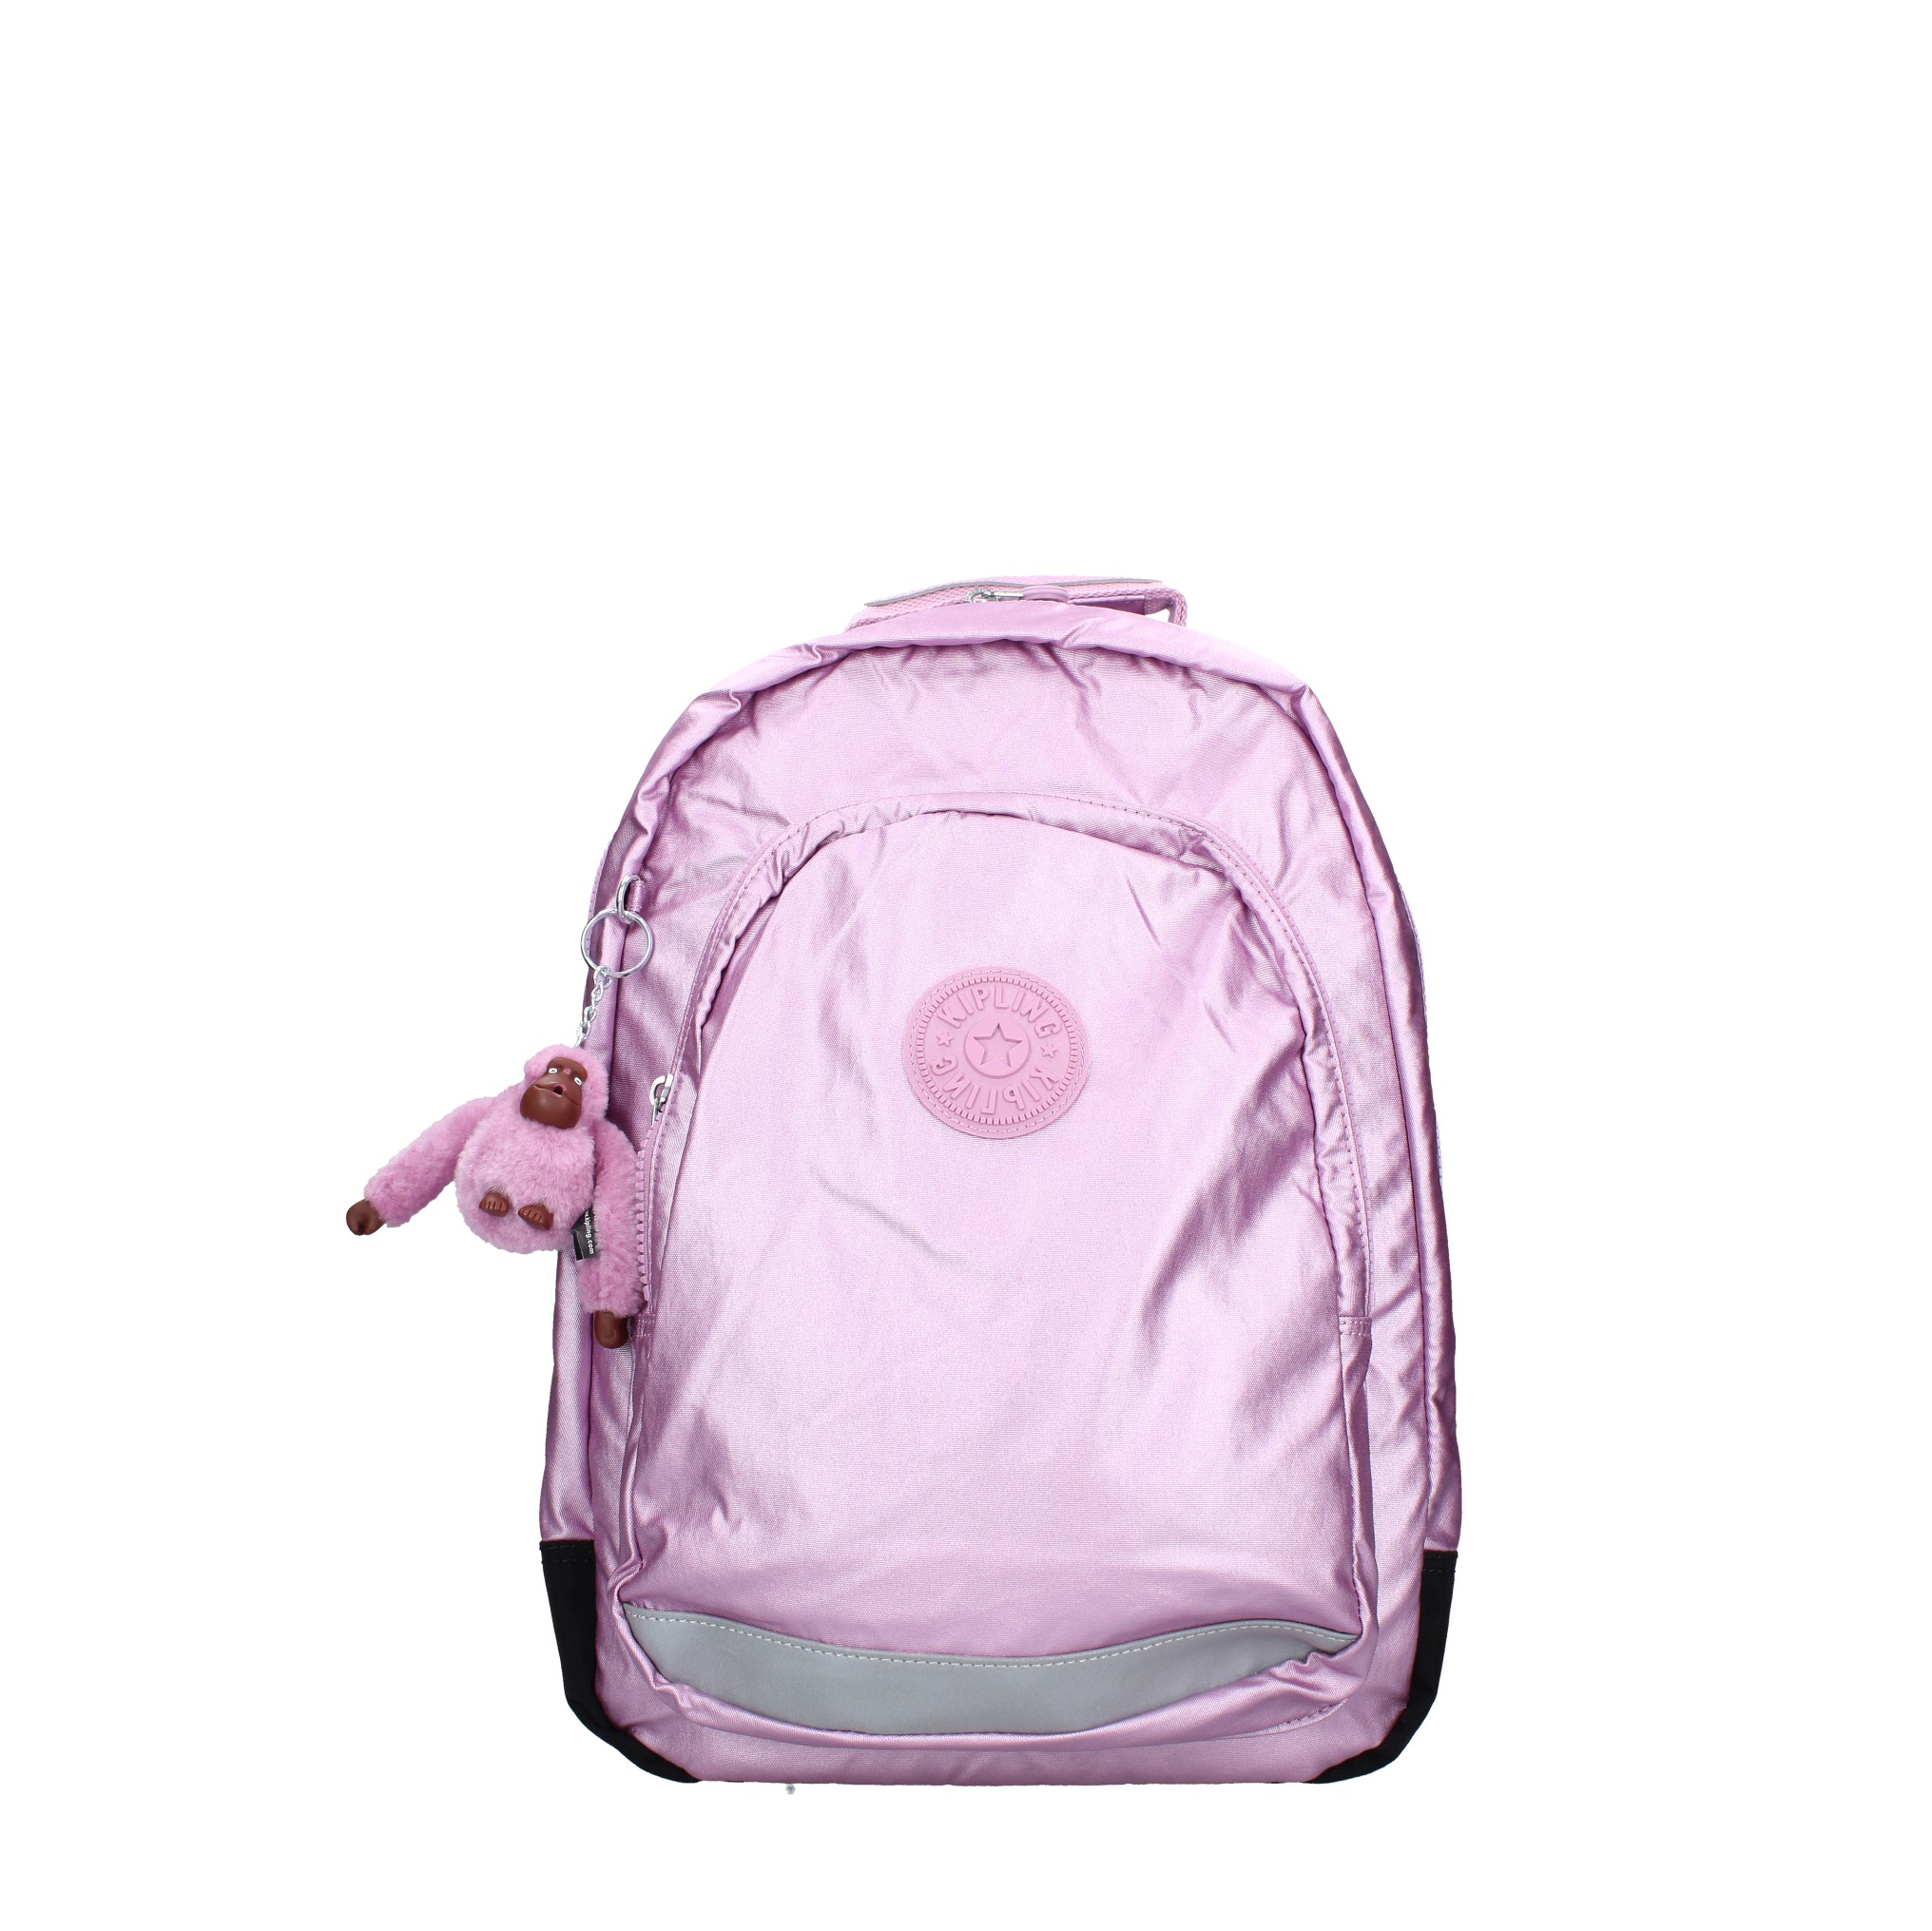 Fabric backpack - KIPLING - Ginevra calzature